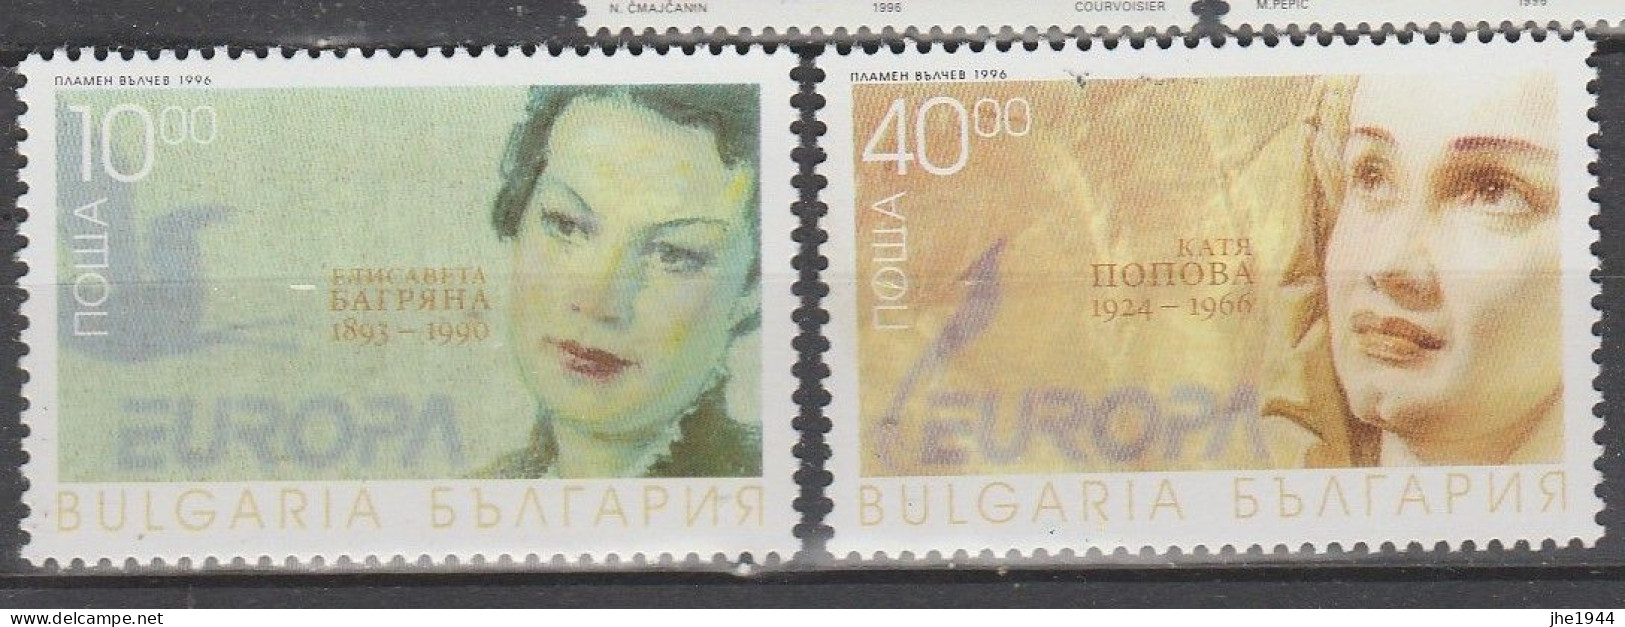 Europa 1996 Les femmes célébres Voir liste des timbres à vendre **